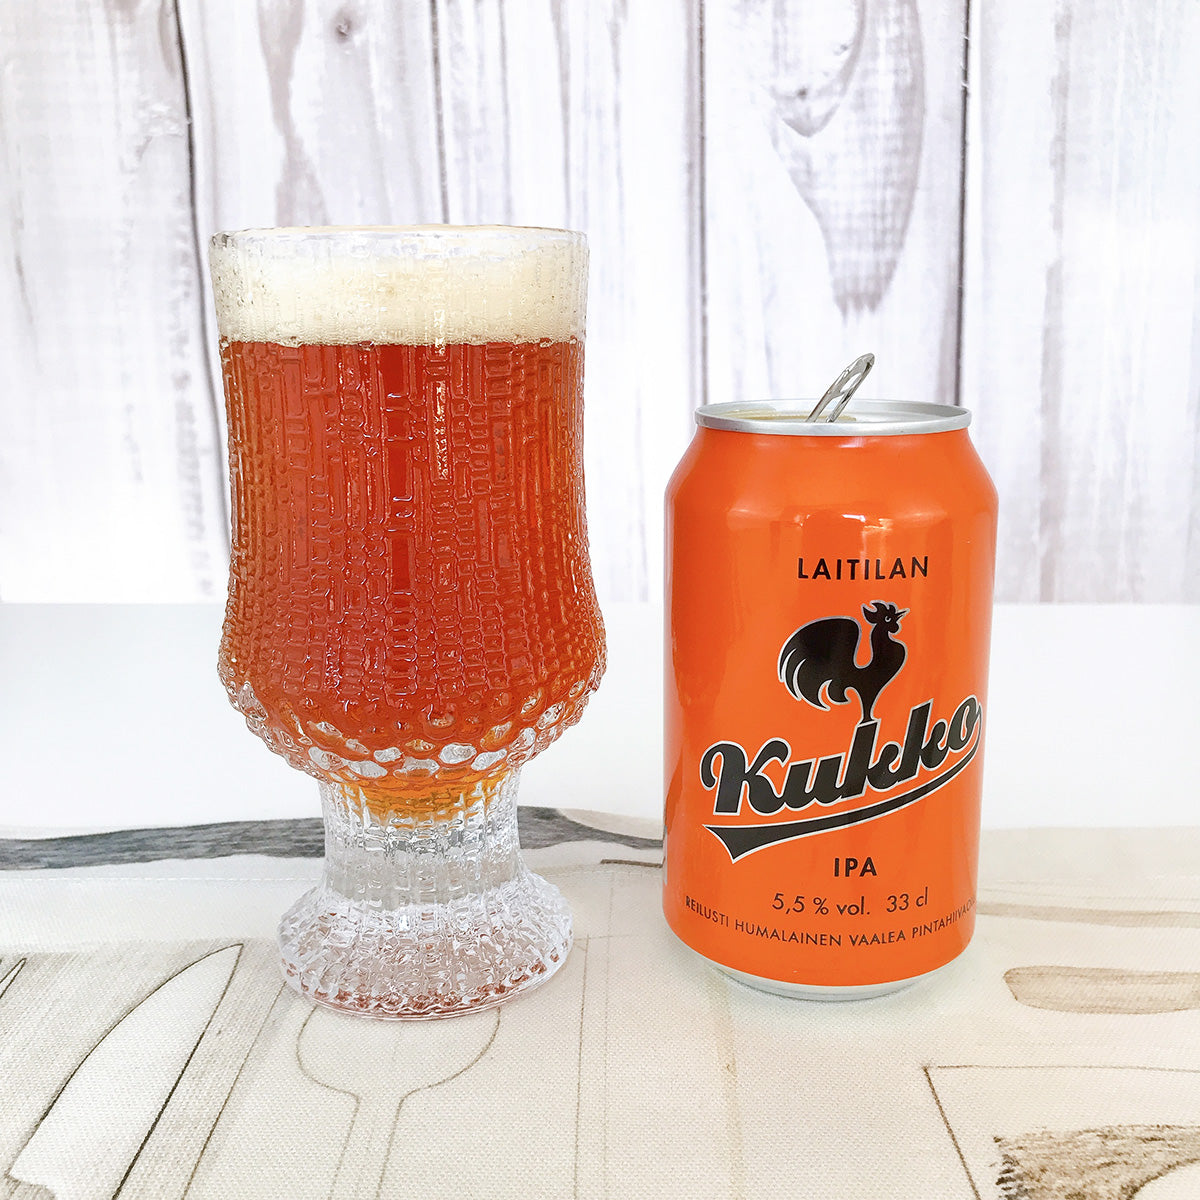 Laitilan ライティラン Kukko クッコ ビール IPA（アルコール飲料)